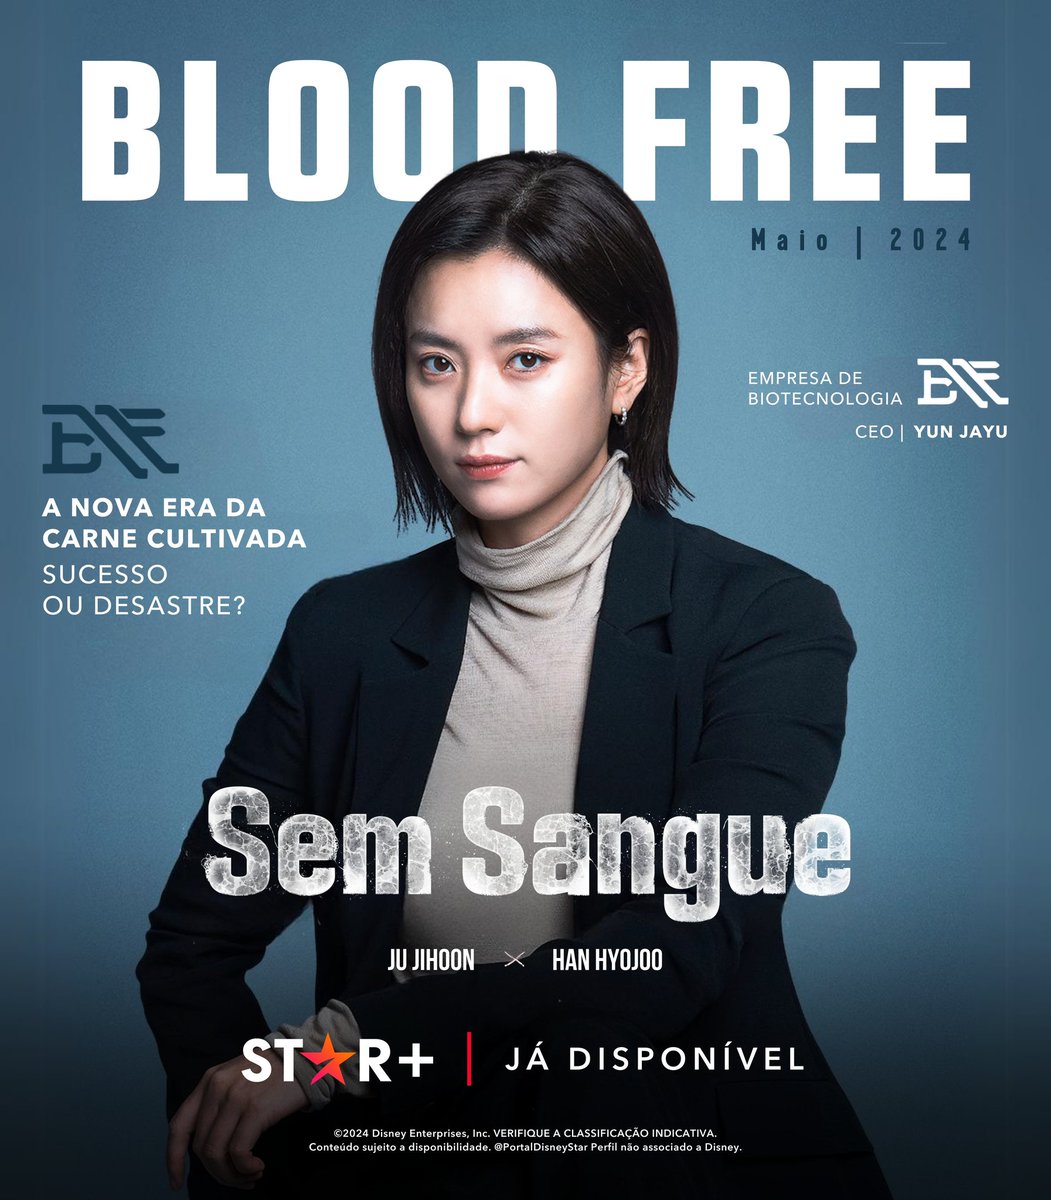 Em um mundo de carne cultivada, é possível salvar vidas? Conheça a BF, uma empresa de Biotecnologia focada no futuro. 🧬 #SemSangue Série Original. Já disponível no #StarPlusBR. #지배종 #BloodFree #JuJiHoon #HanHyoJoo #LeeHeeJoon #LeeMooSaeng #ParkJiYeon #JeonSeokHo #KimSangHo